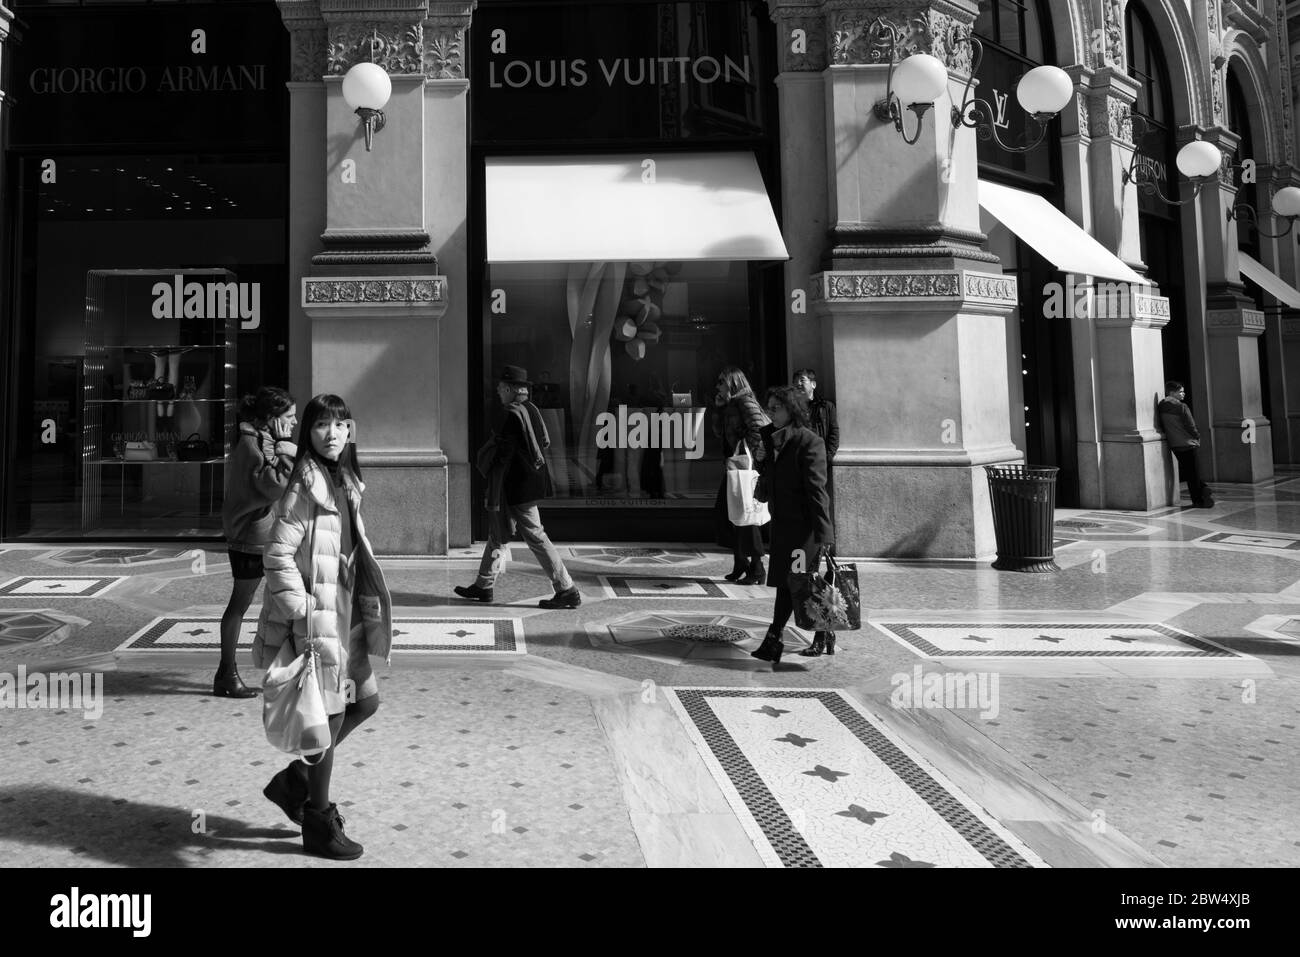 MILANO, ITALIA - 16 MARZO 2018: Immagine in bianco e nero della gente alla Galleria Vittorio Emanuele II, un antico centro commerciale di Milano Foto Stock